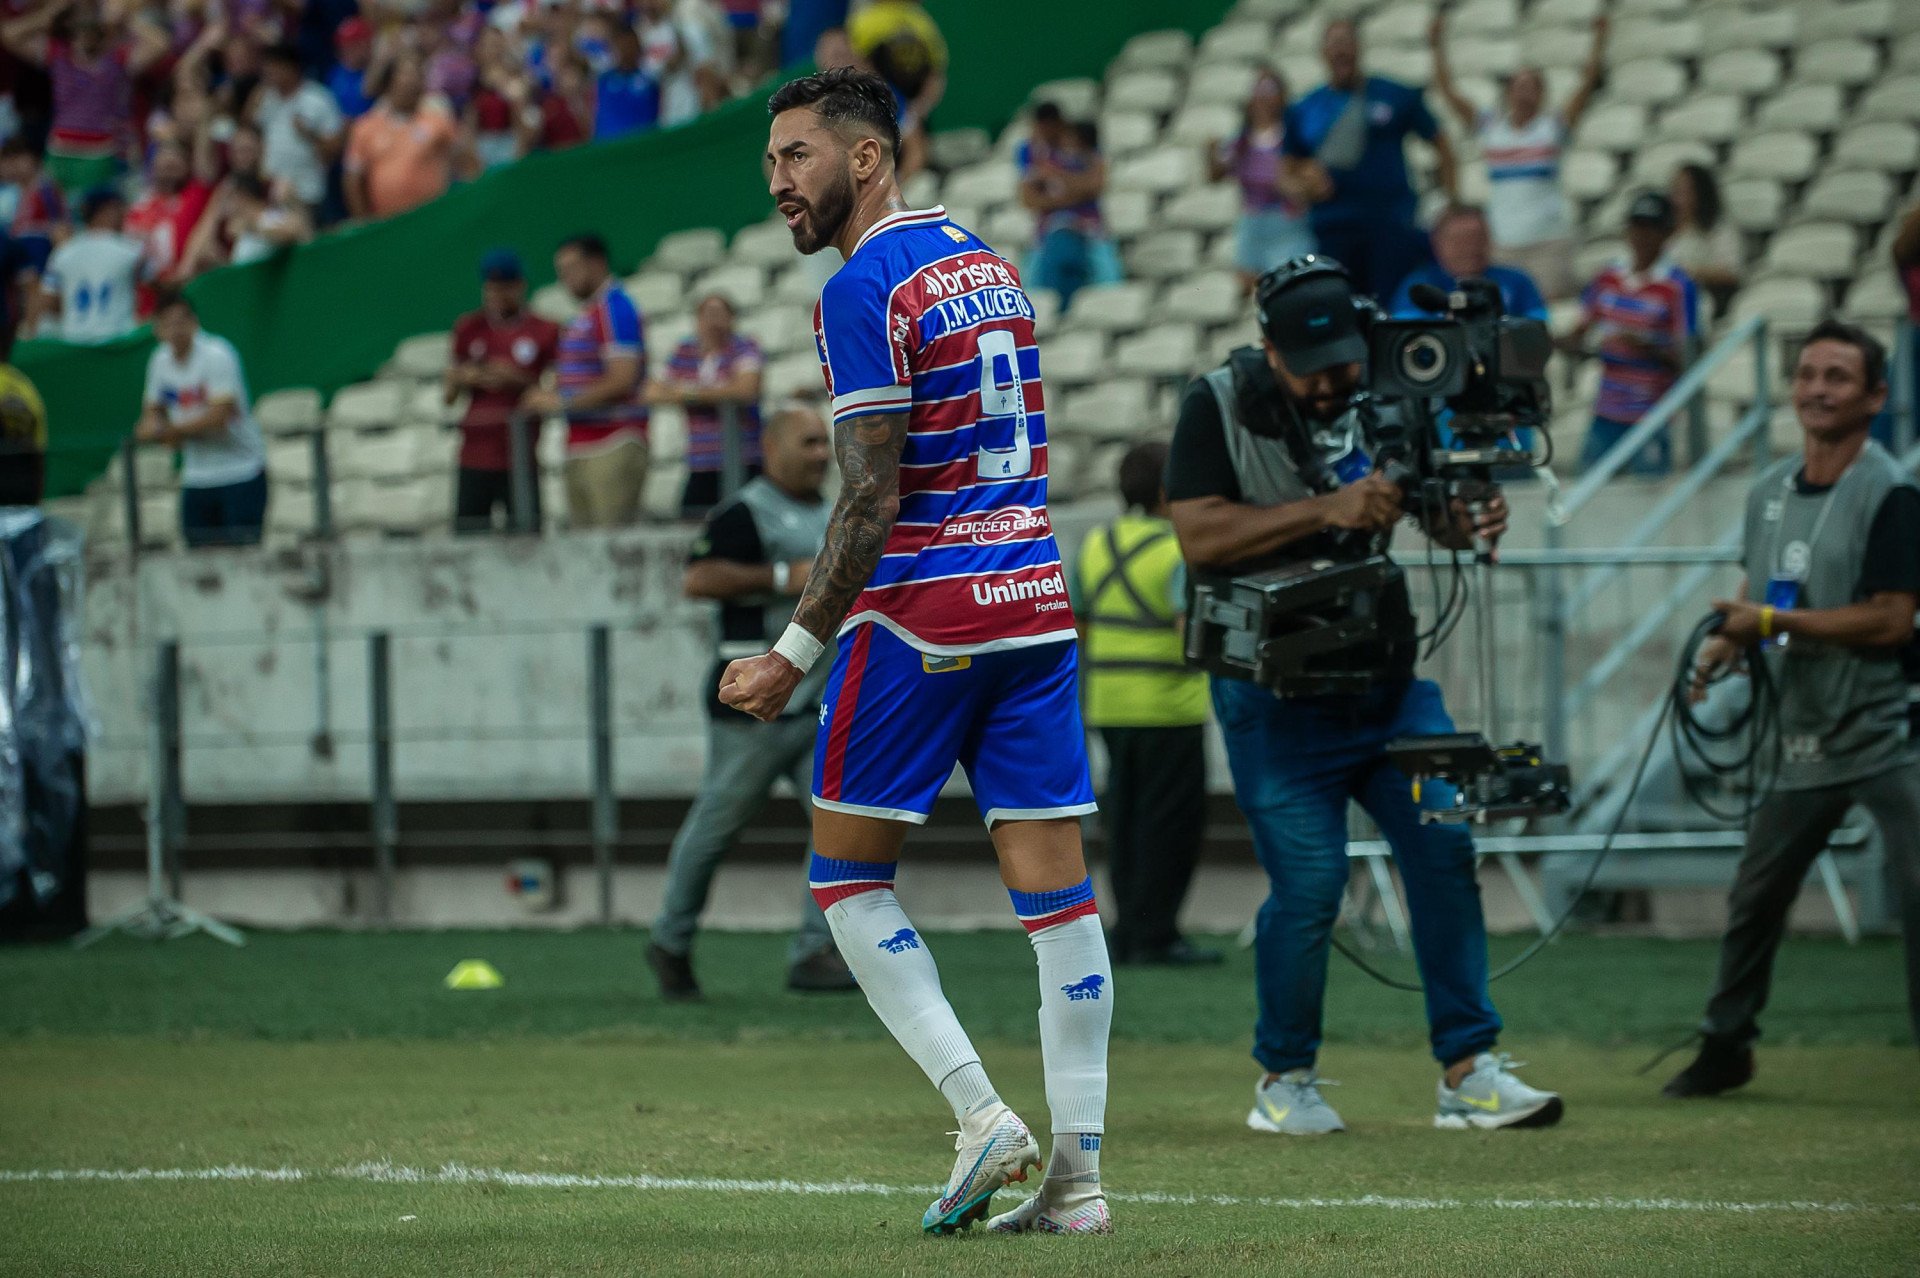 Lucero anotou quatro gols nos últimos três jogos (Foto: Davi Rocha/Especial para O Povo)